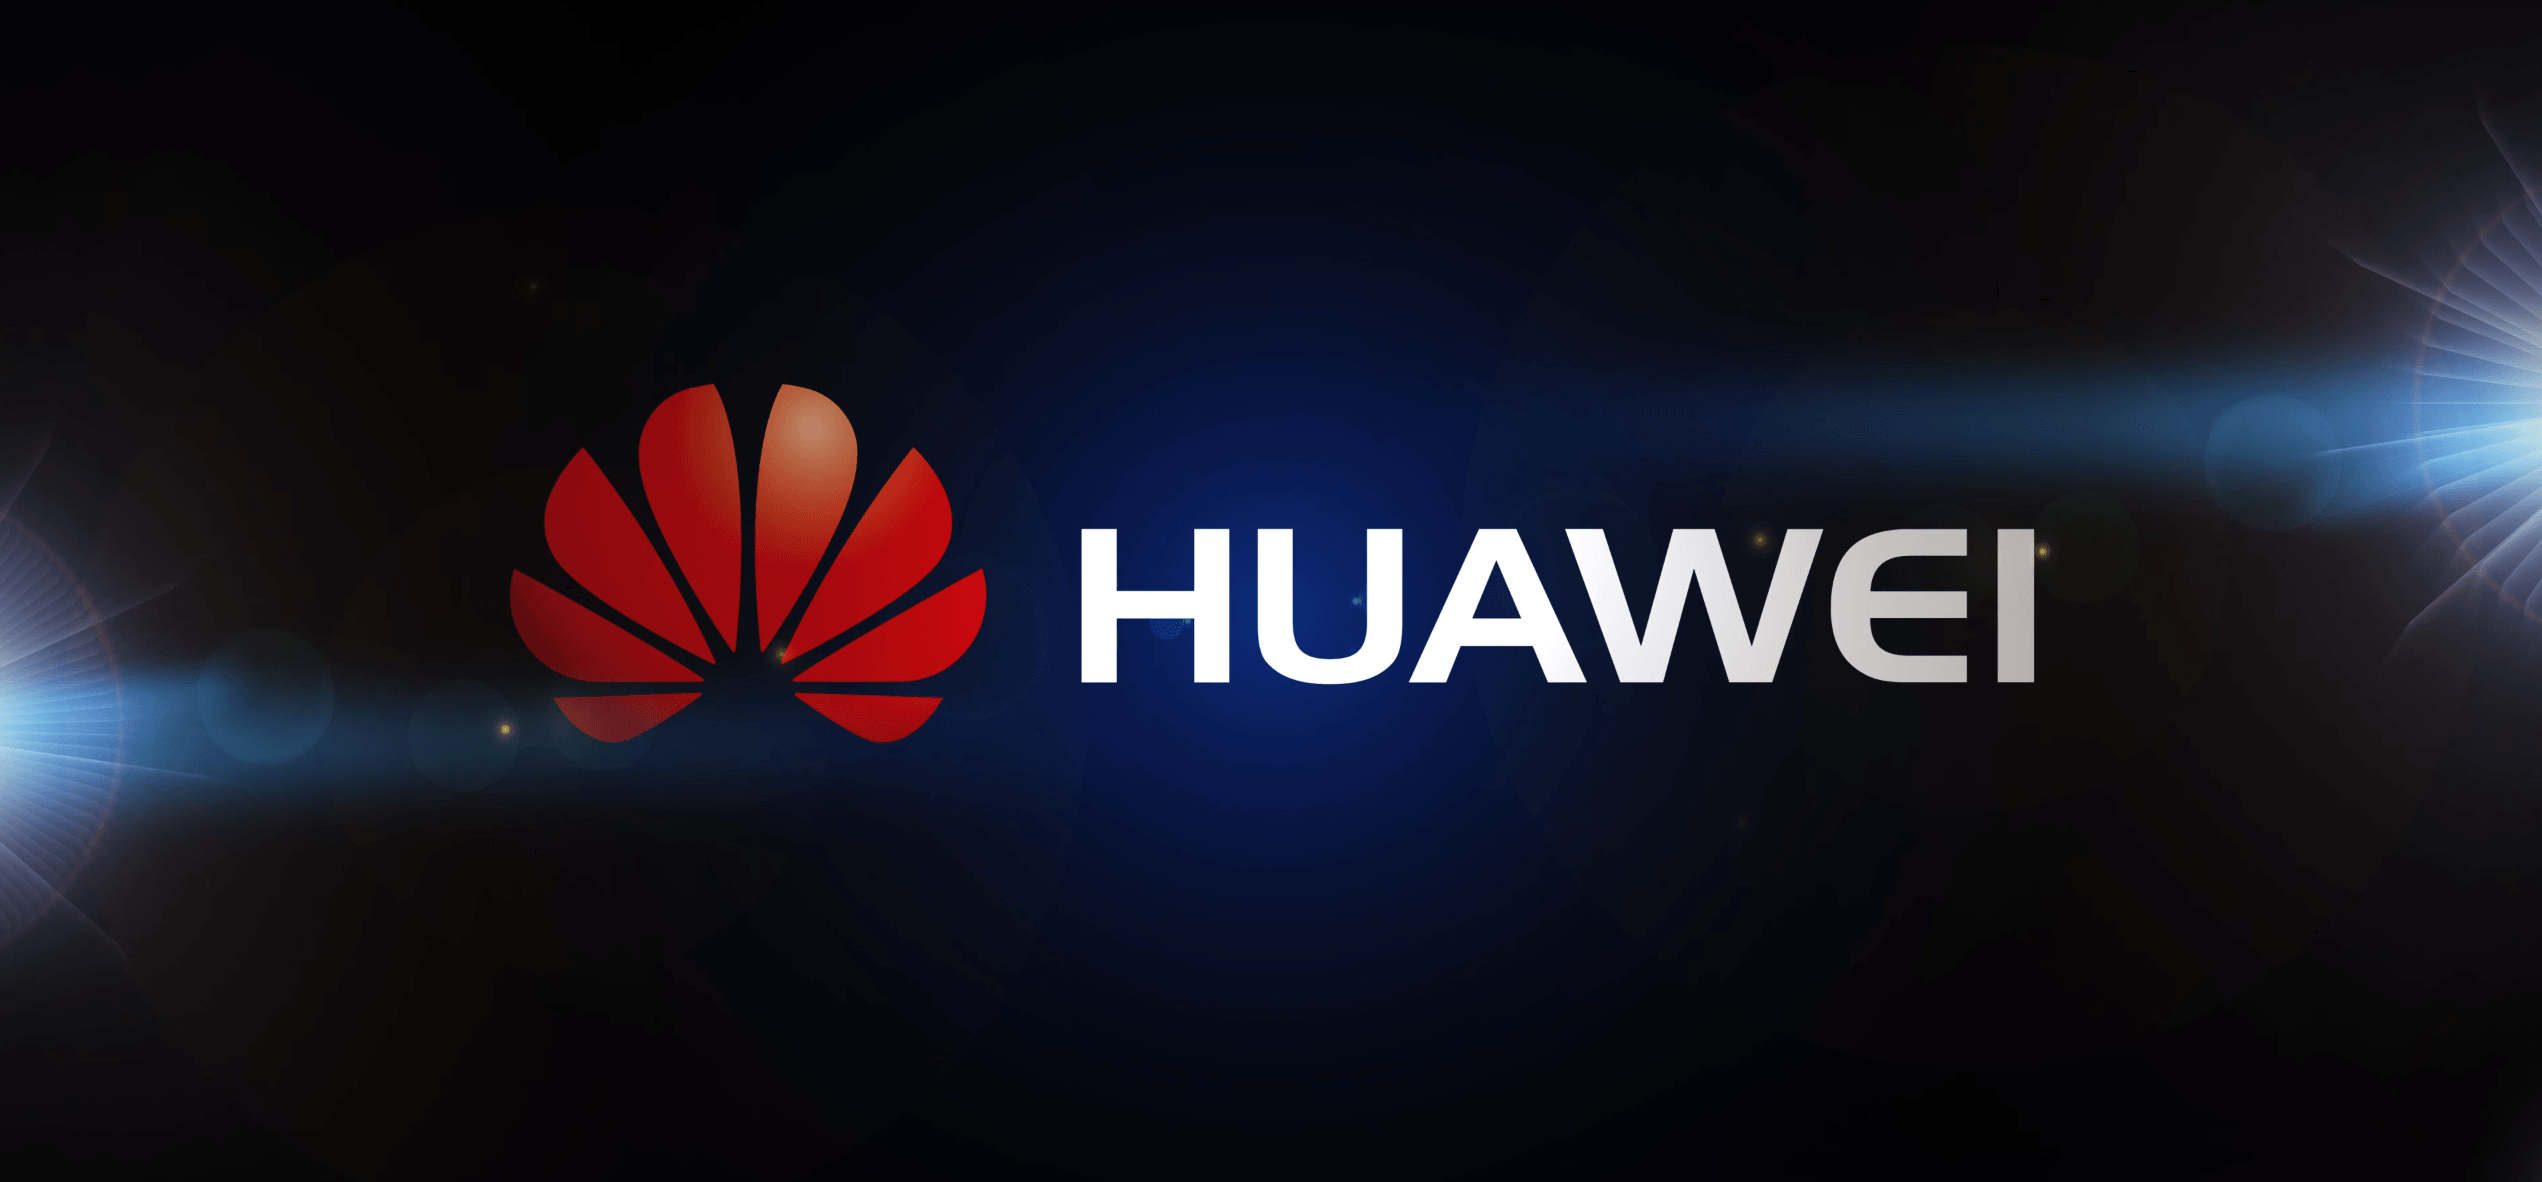 Обои с логотипом Huawei